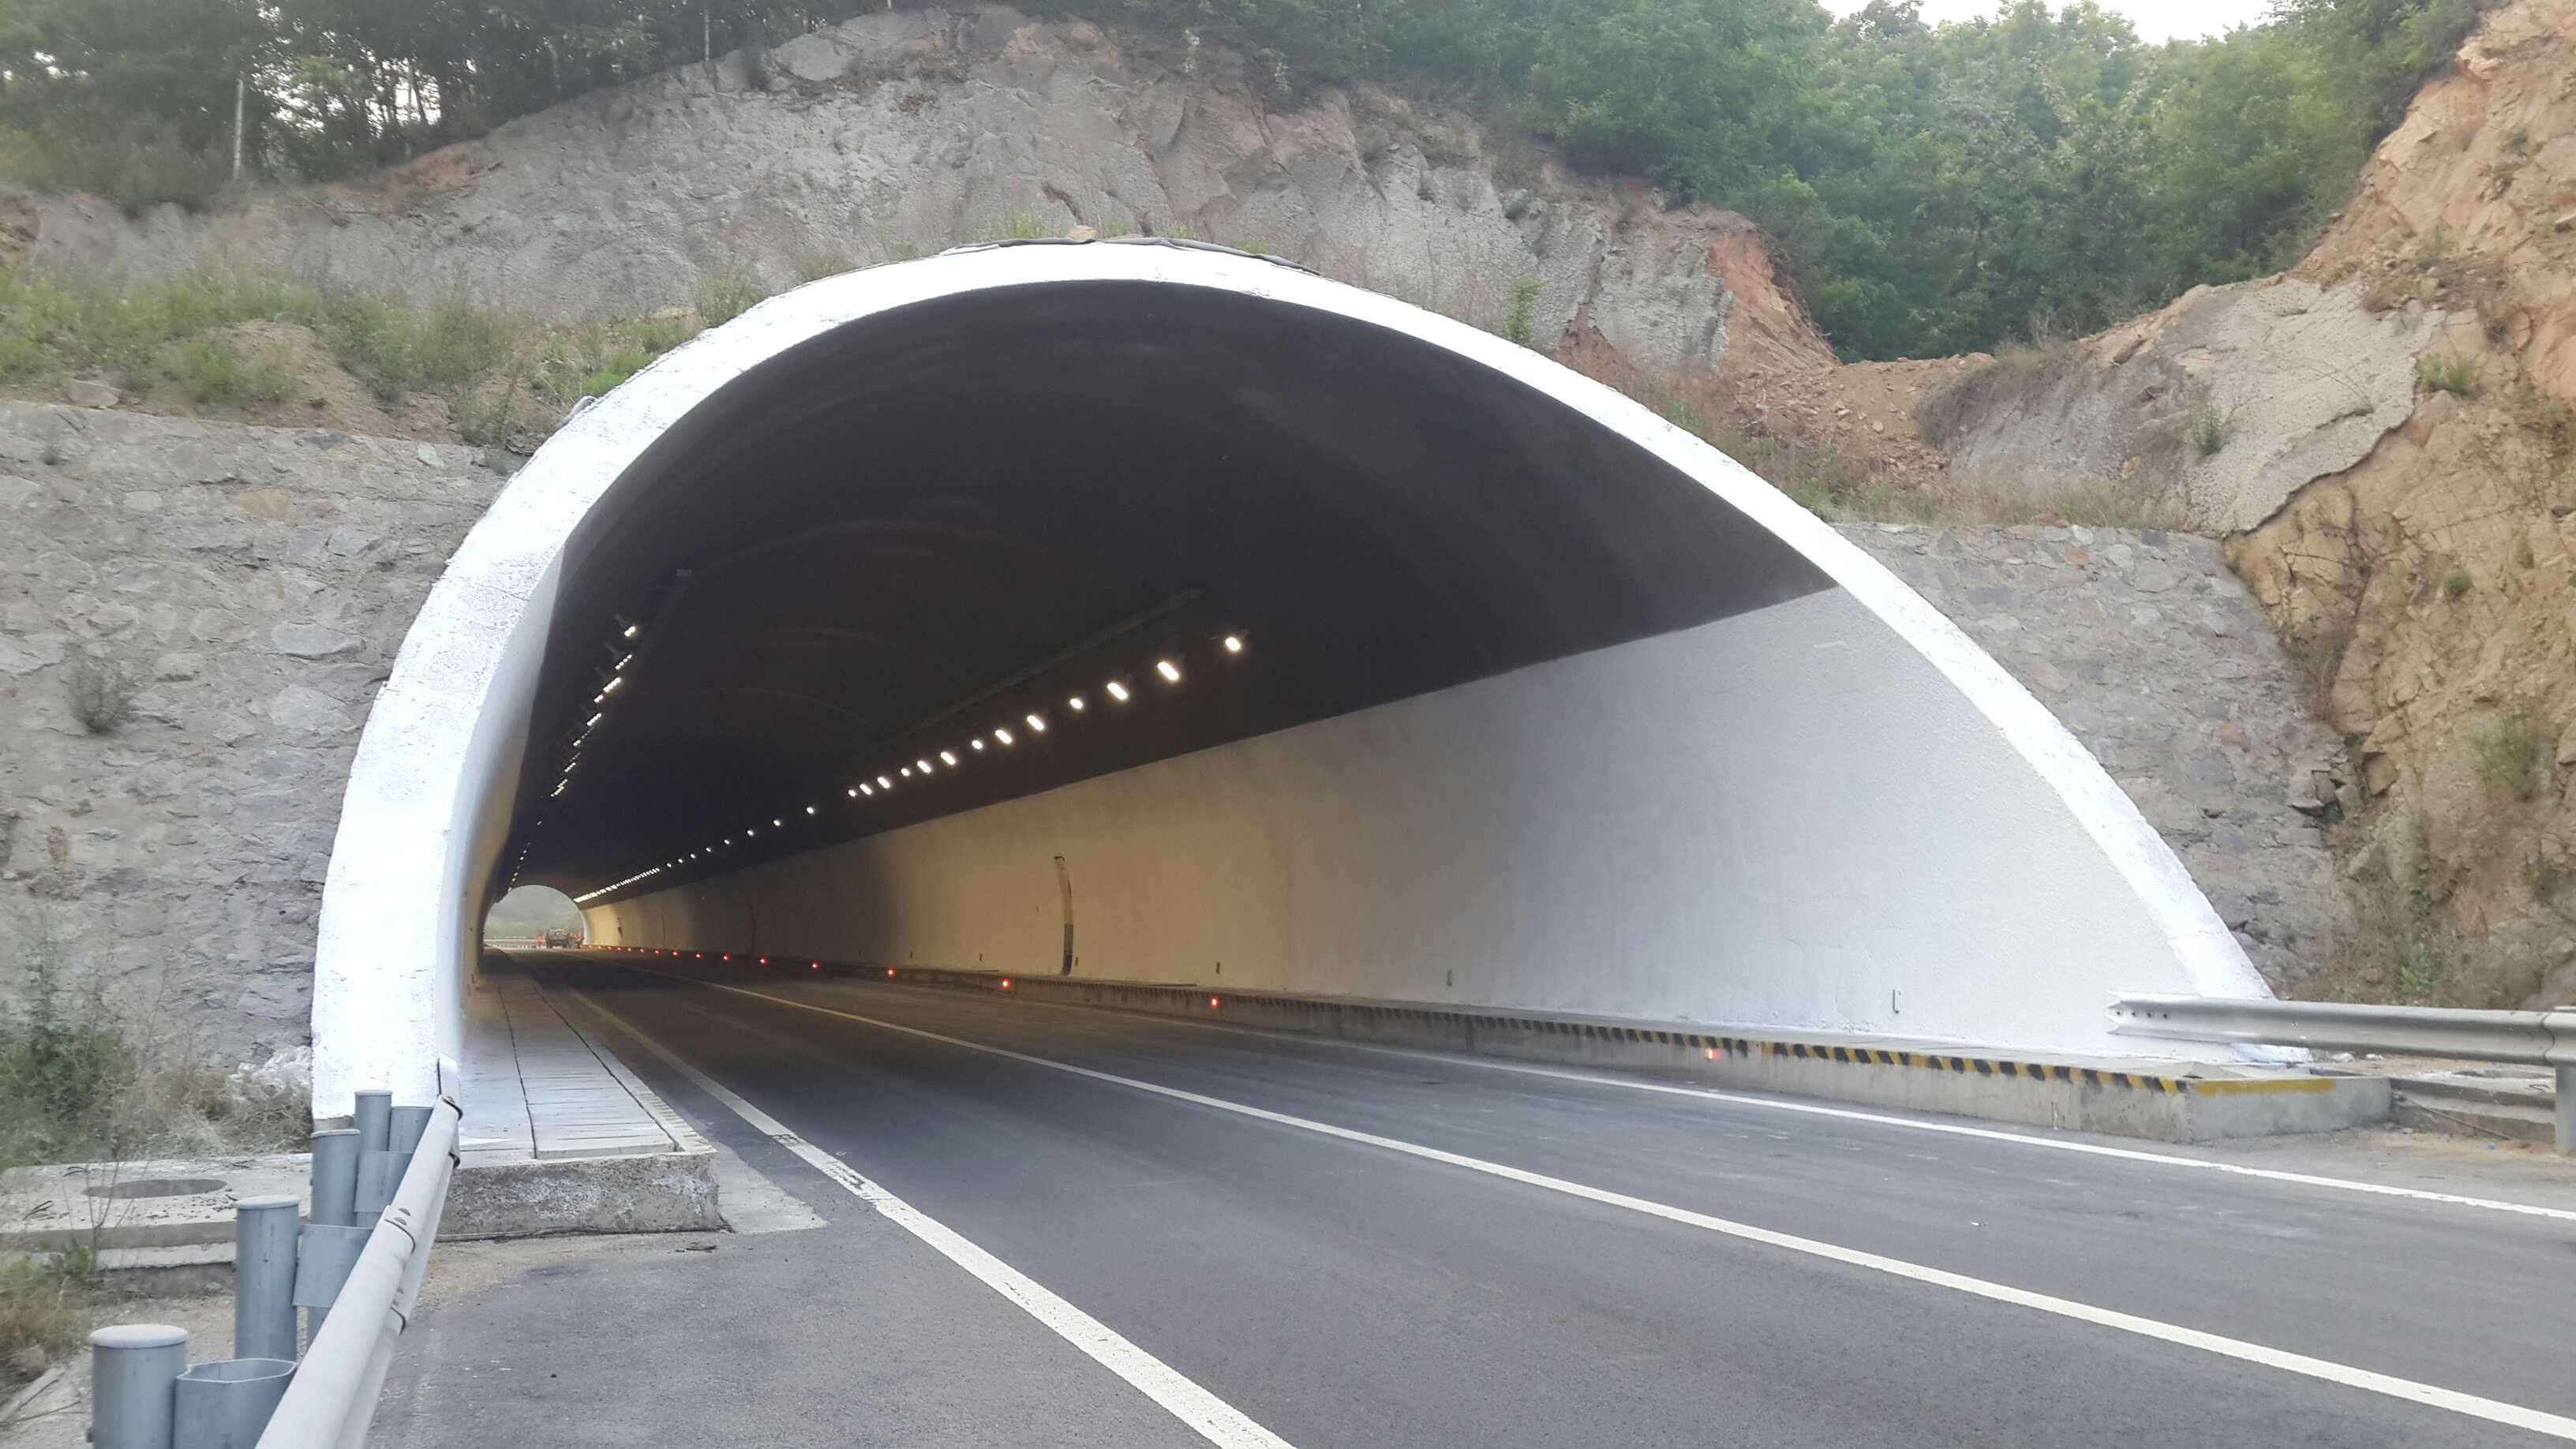 玉兴路延伸段隧道工程火热施工中 预计明年上半年可实现隧道全线贯通